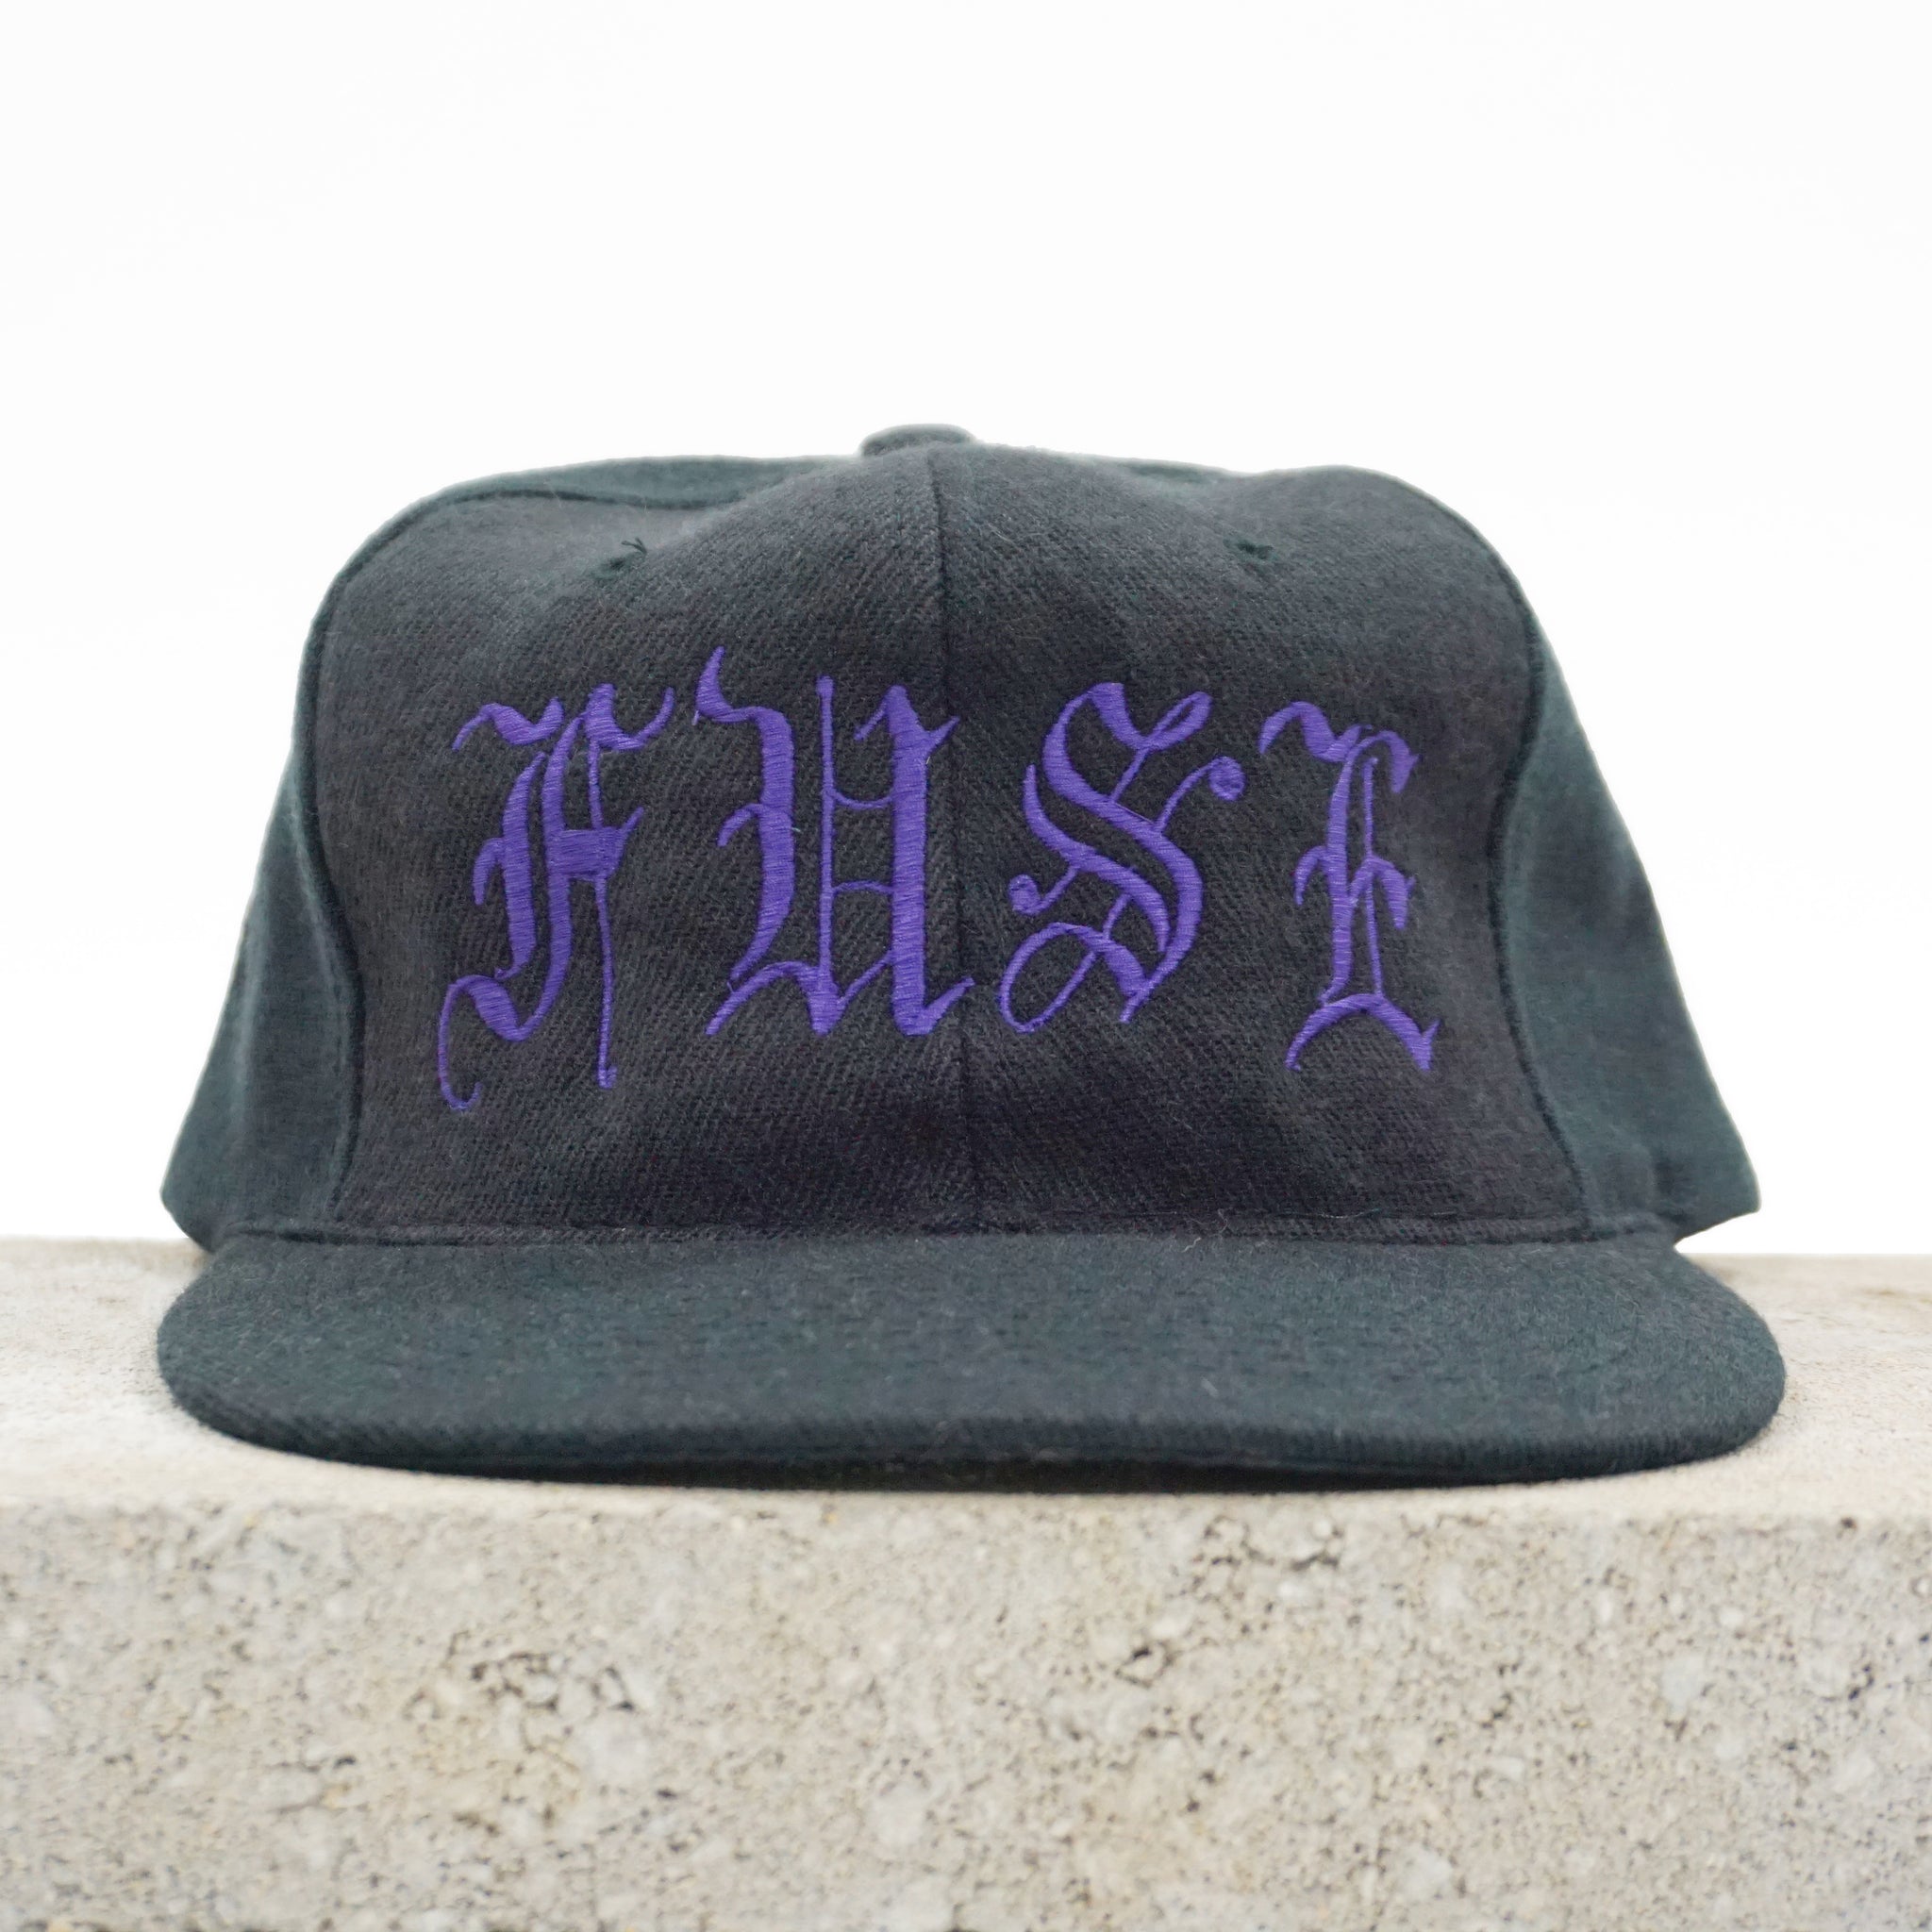 Fuse Concepts - Blackletter Hat (Black/Purple)